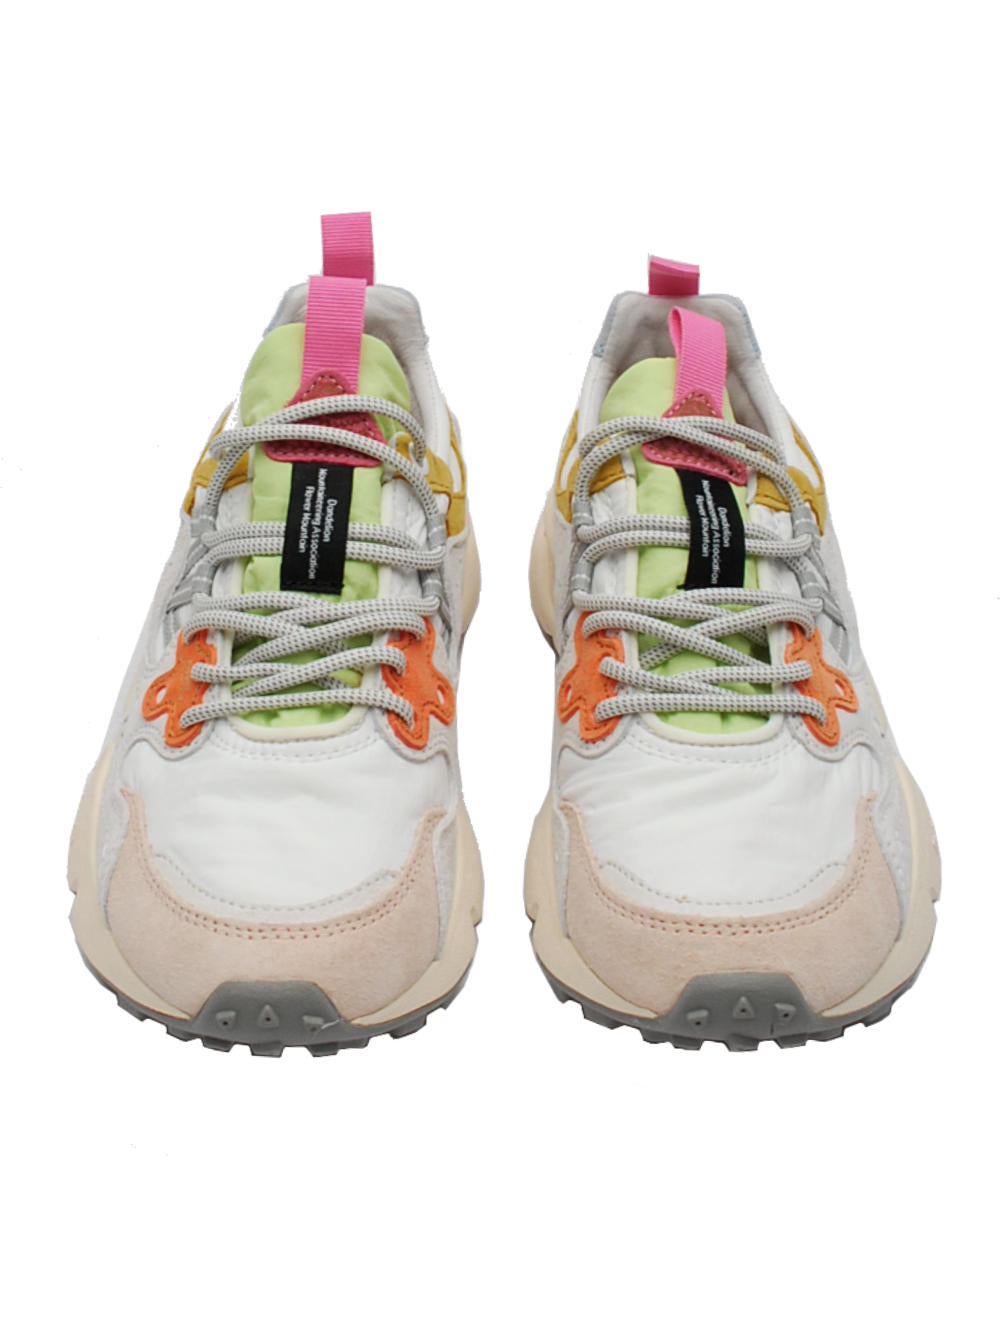 Flower mountain sneaker yamano 3 1n04 white pink pe24